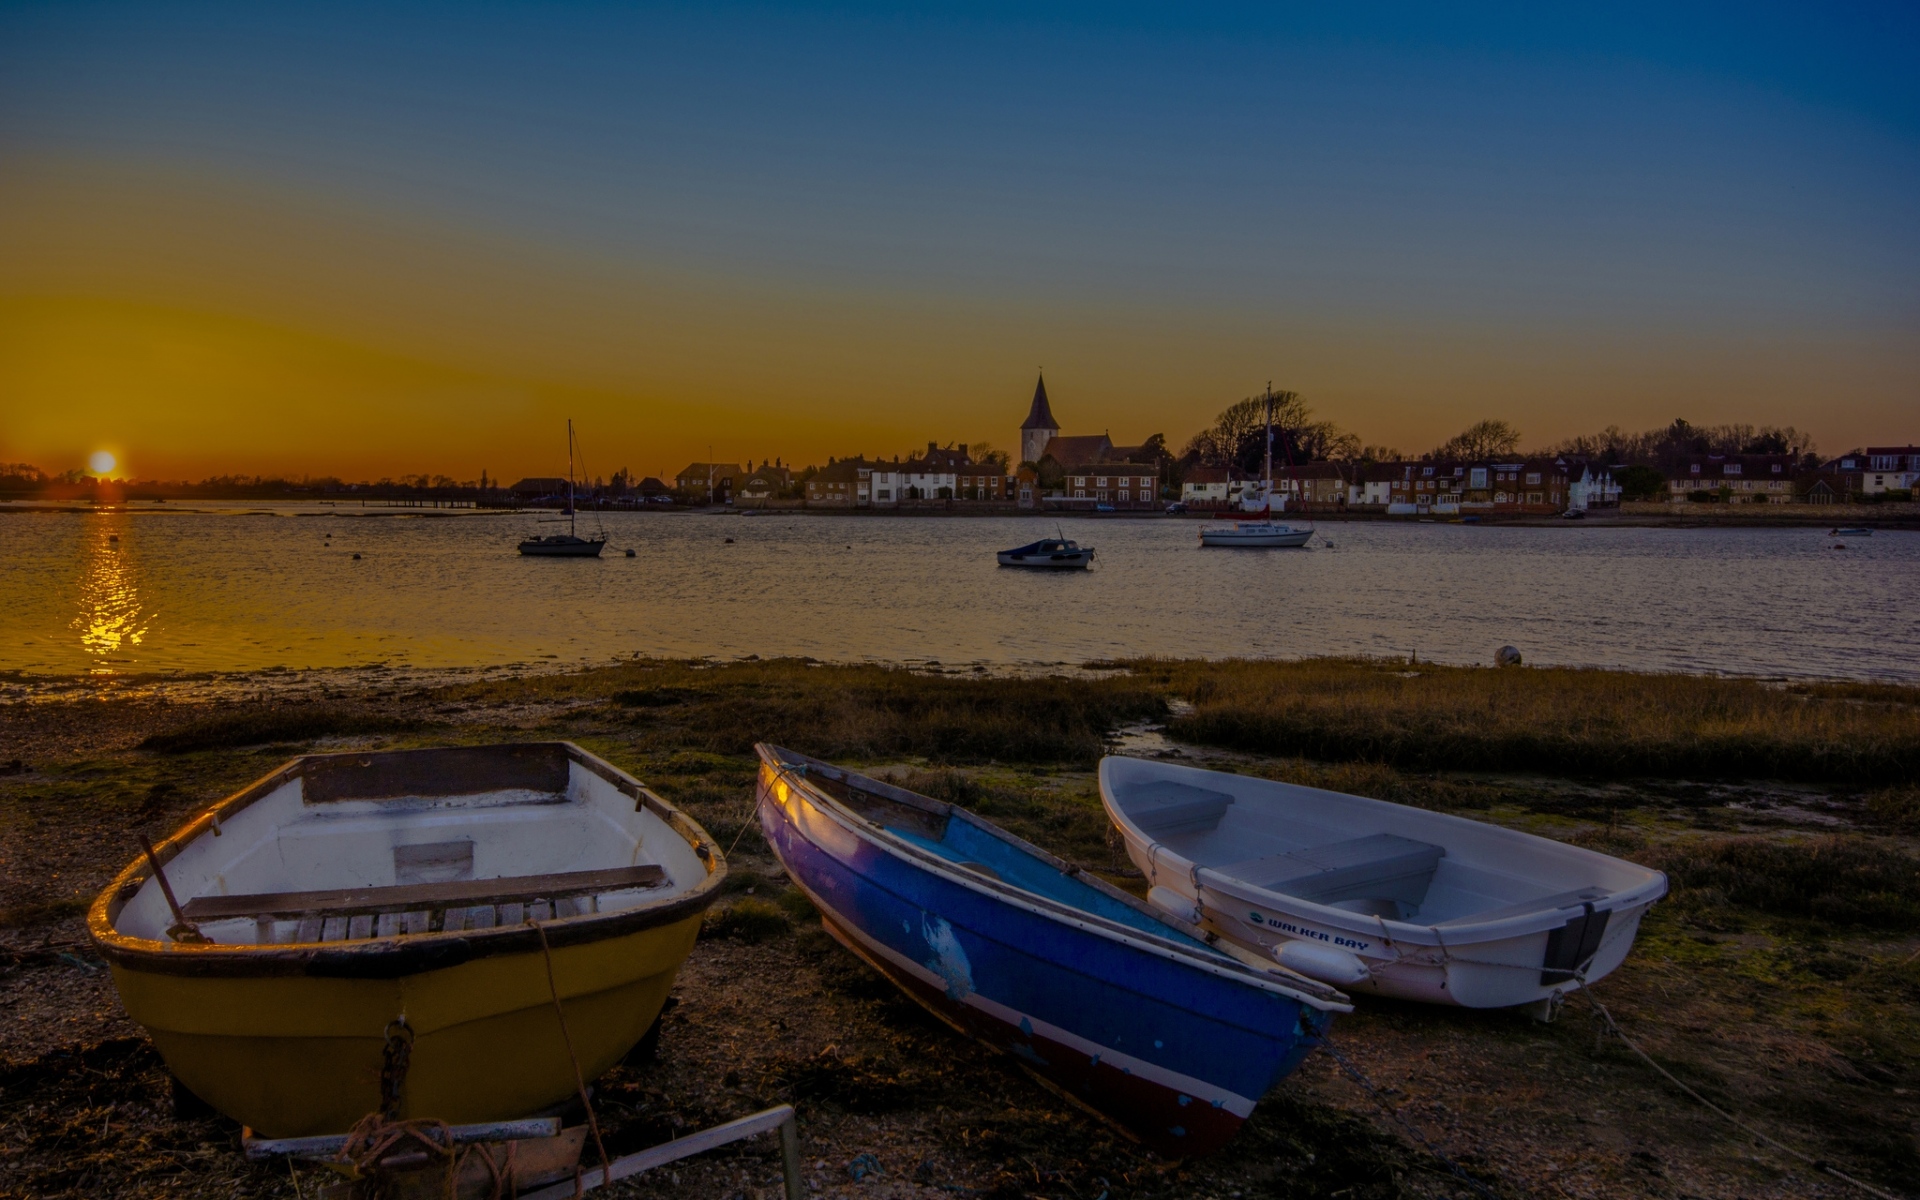 Картинки Вечер, залив, деревня, лодки, закат фото и обои на рабочий стол